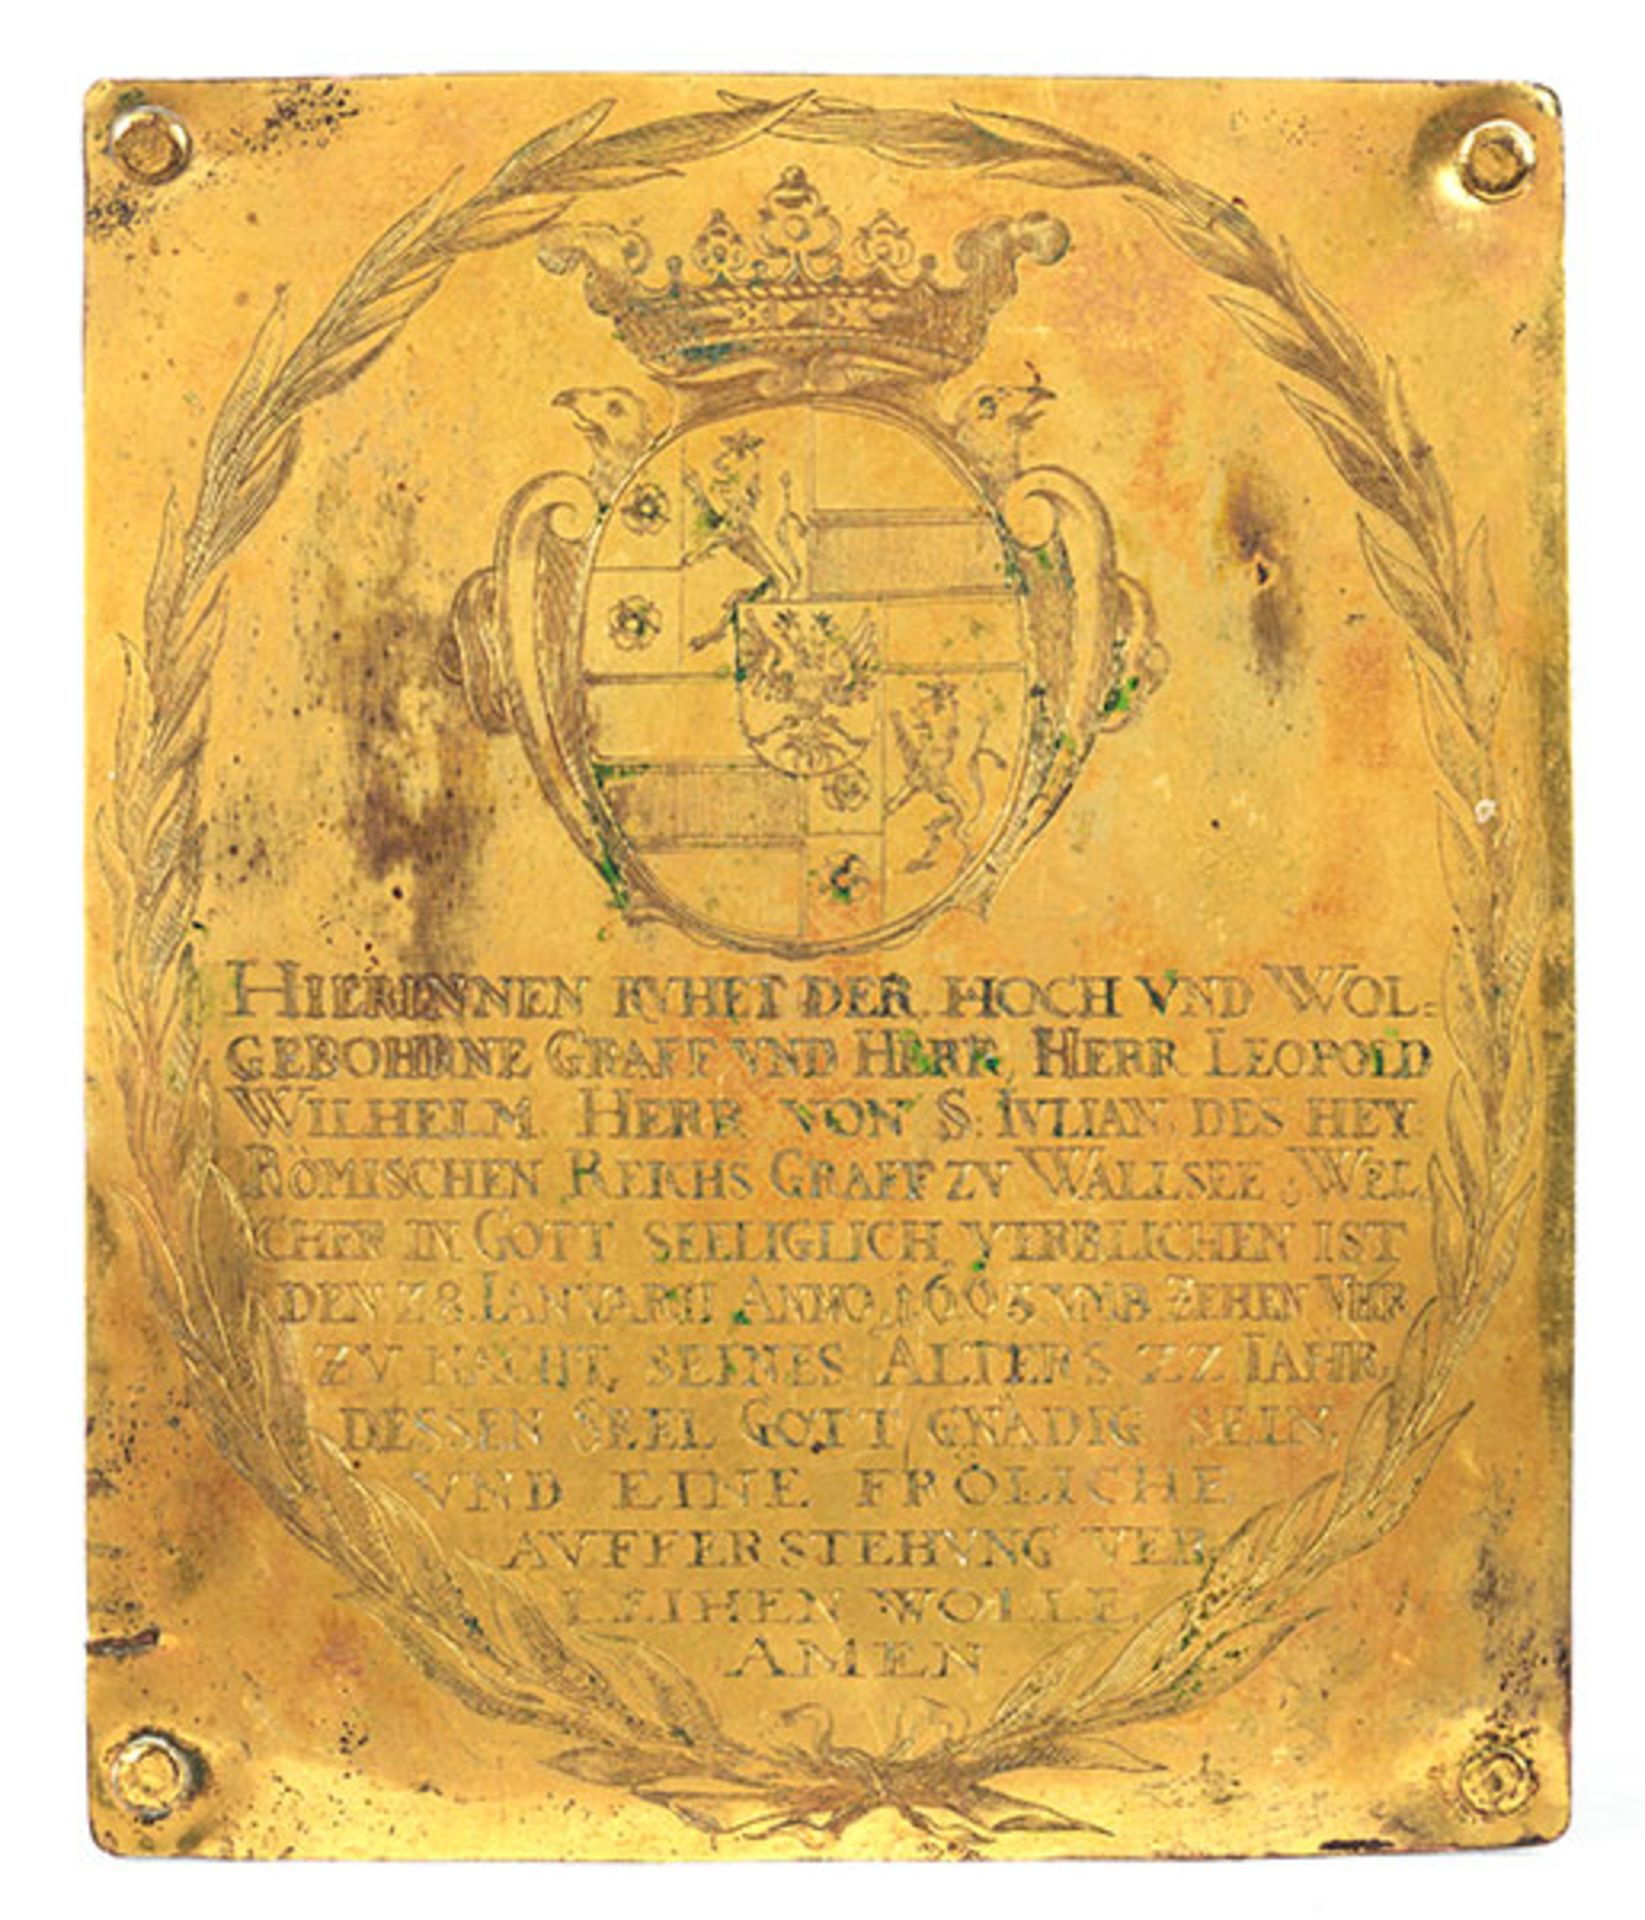 Feuervergoldete Kupferplatte 21 x 17,5 cm. Mit Datierung "1663". Kupferplatte mit Grafenwappen und